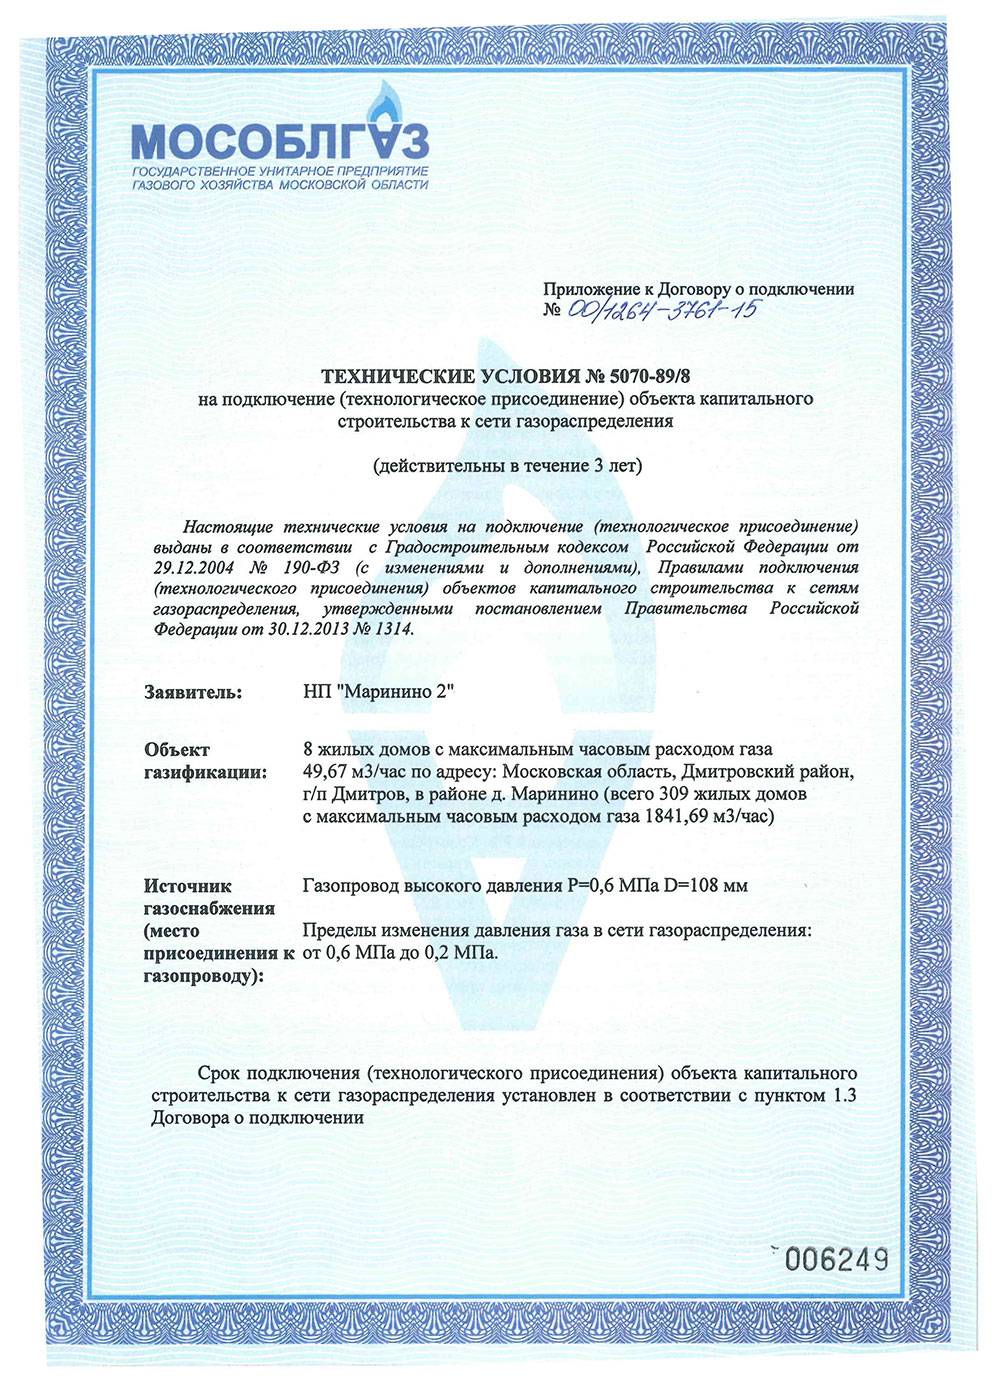 Газификация частных домов: проект, документы, порядок проведения работ :: syl.ru